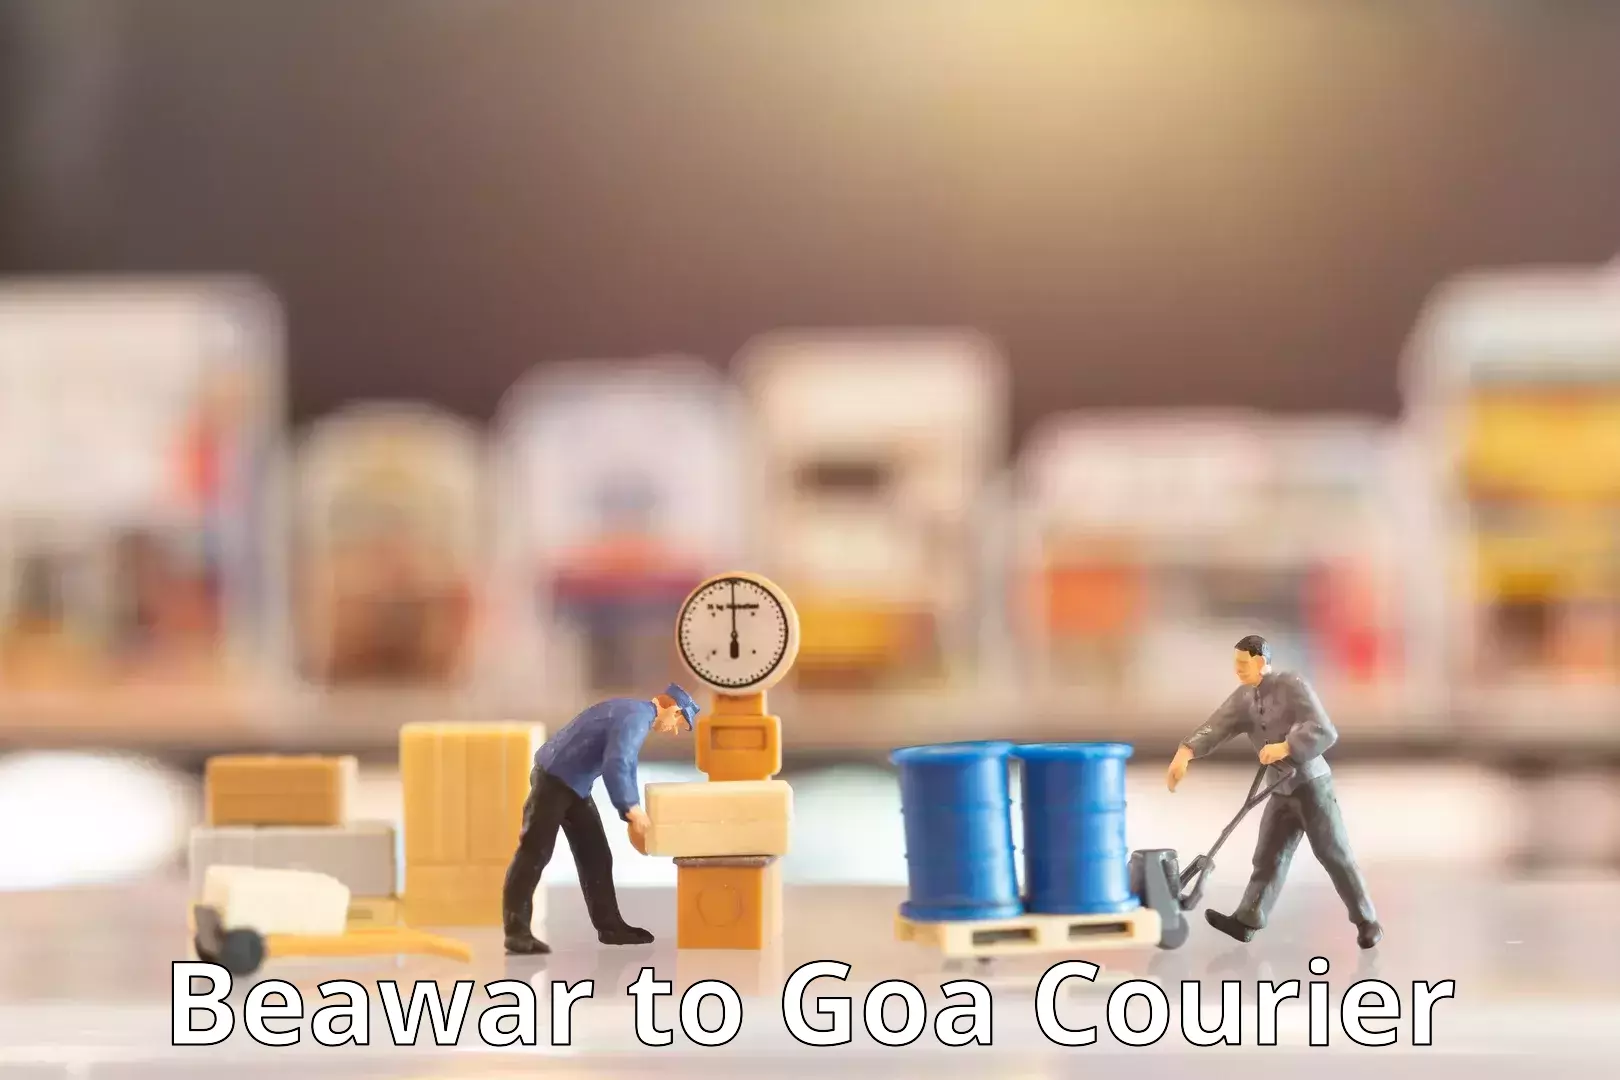 Express logistics service Beawar to Goa